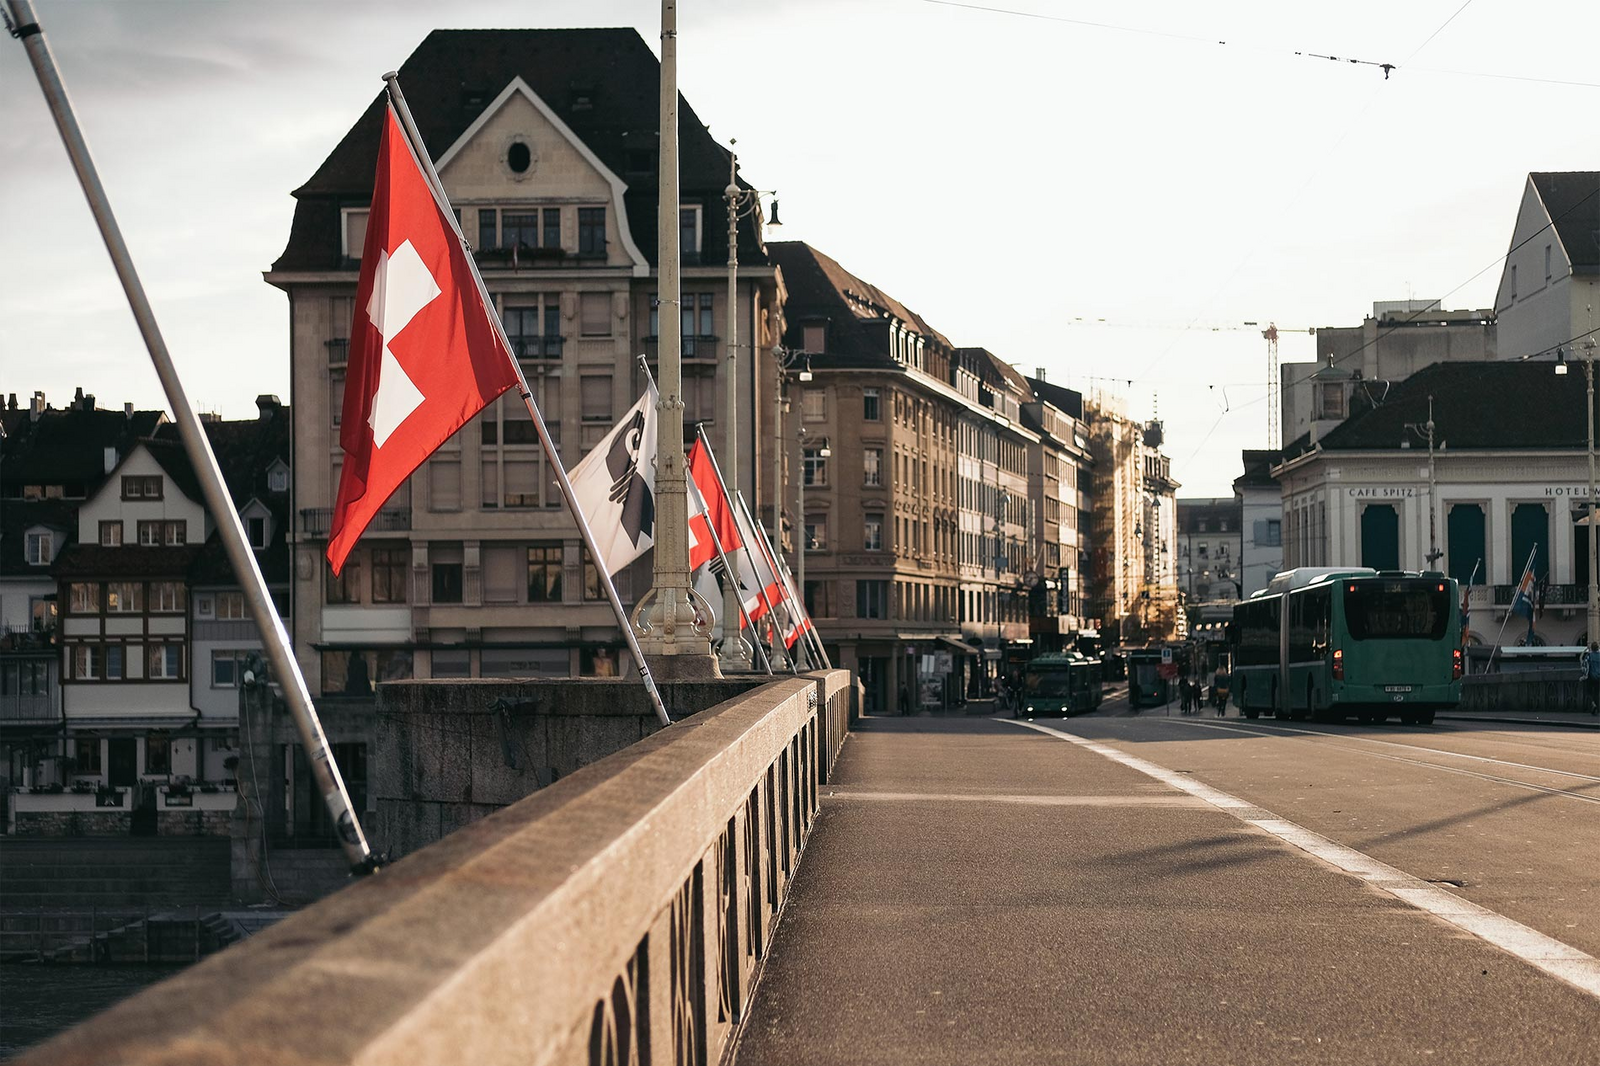 Bandiere svizzere e di Basilea Città sventolano su un ponte a Basilea. Sullo sfondo un bus imbocca una strada costeggiata di case antiche.